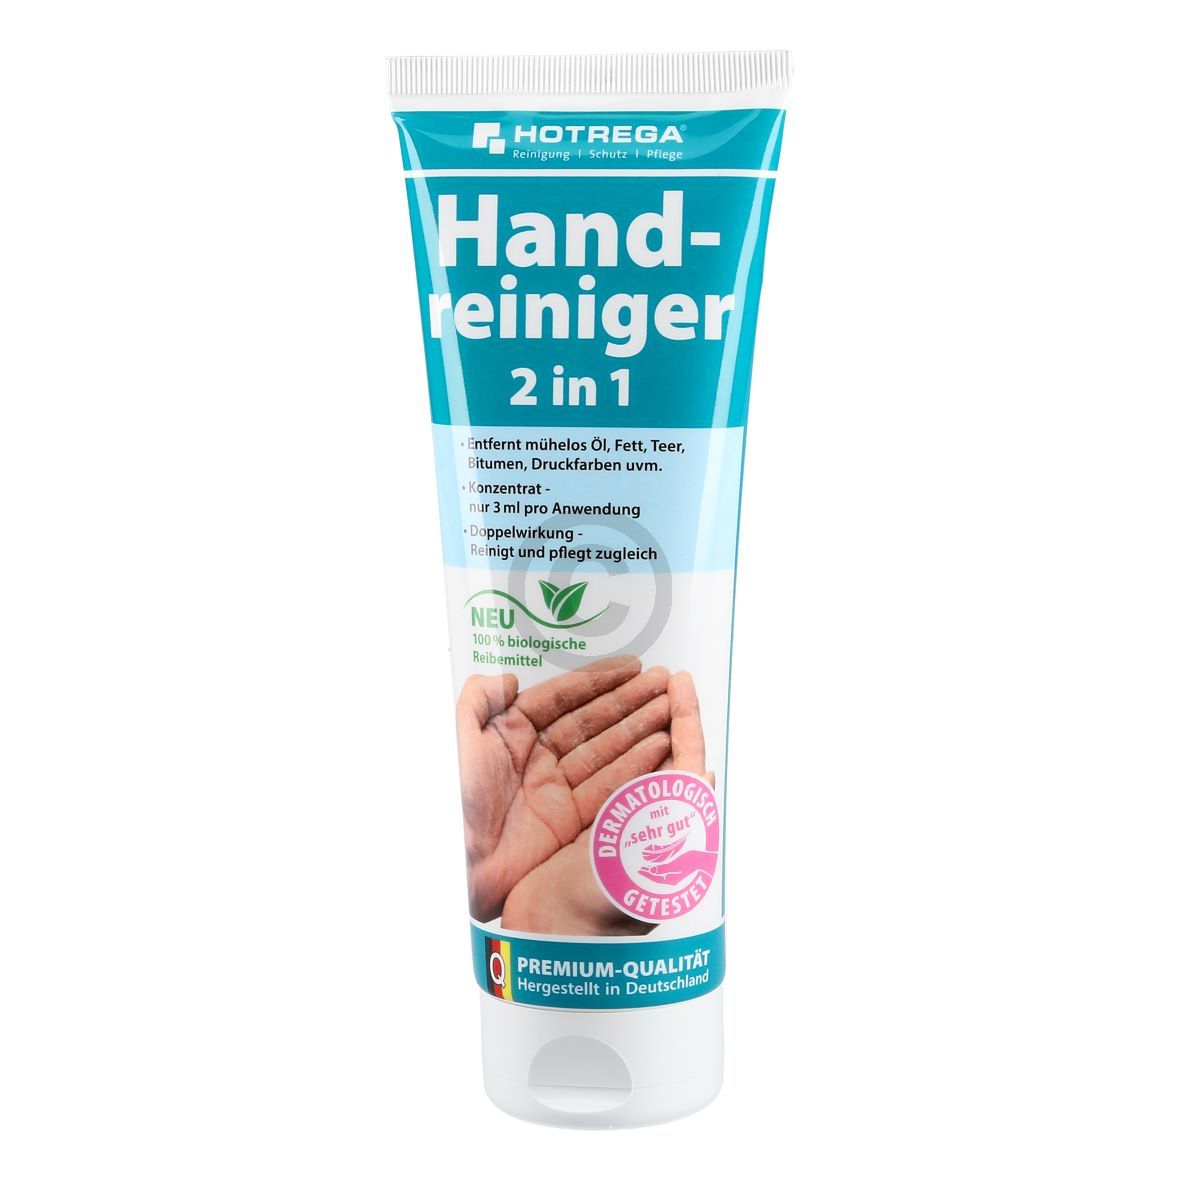 Handwaschpaste Hotrega 2in1 250ml 190215